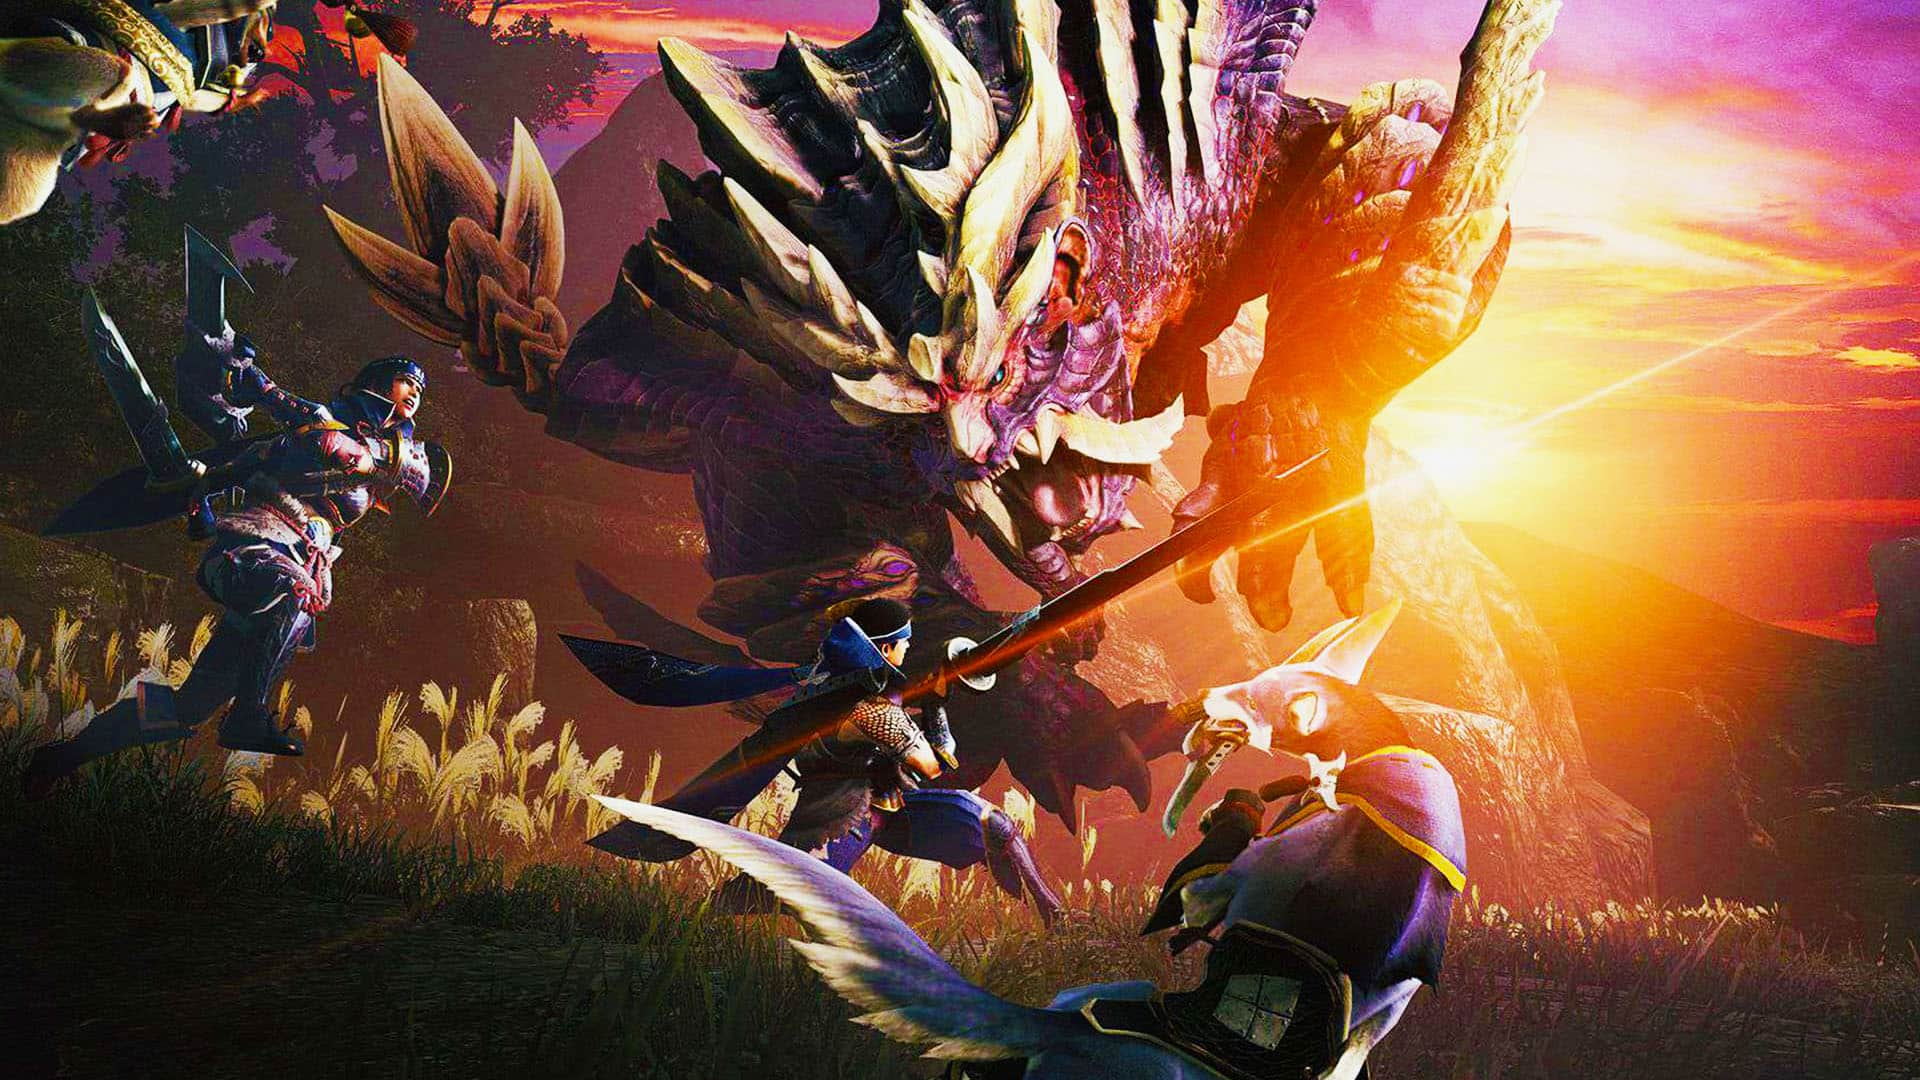 Monster Hunter Rise: Sunbreak (PC) preview — New monsters, new